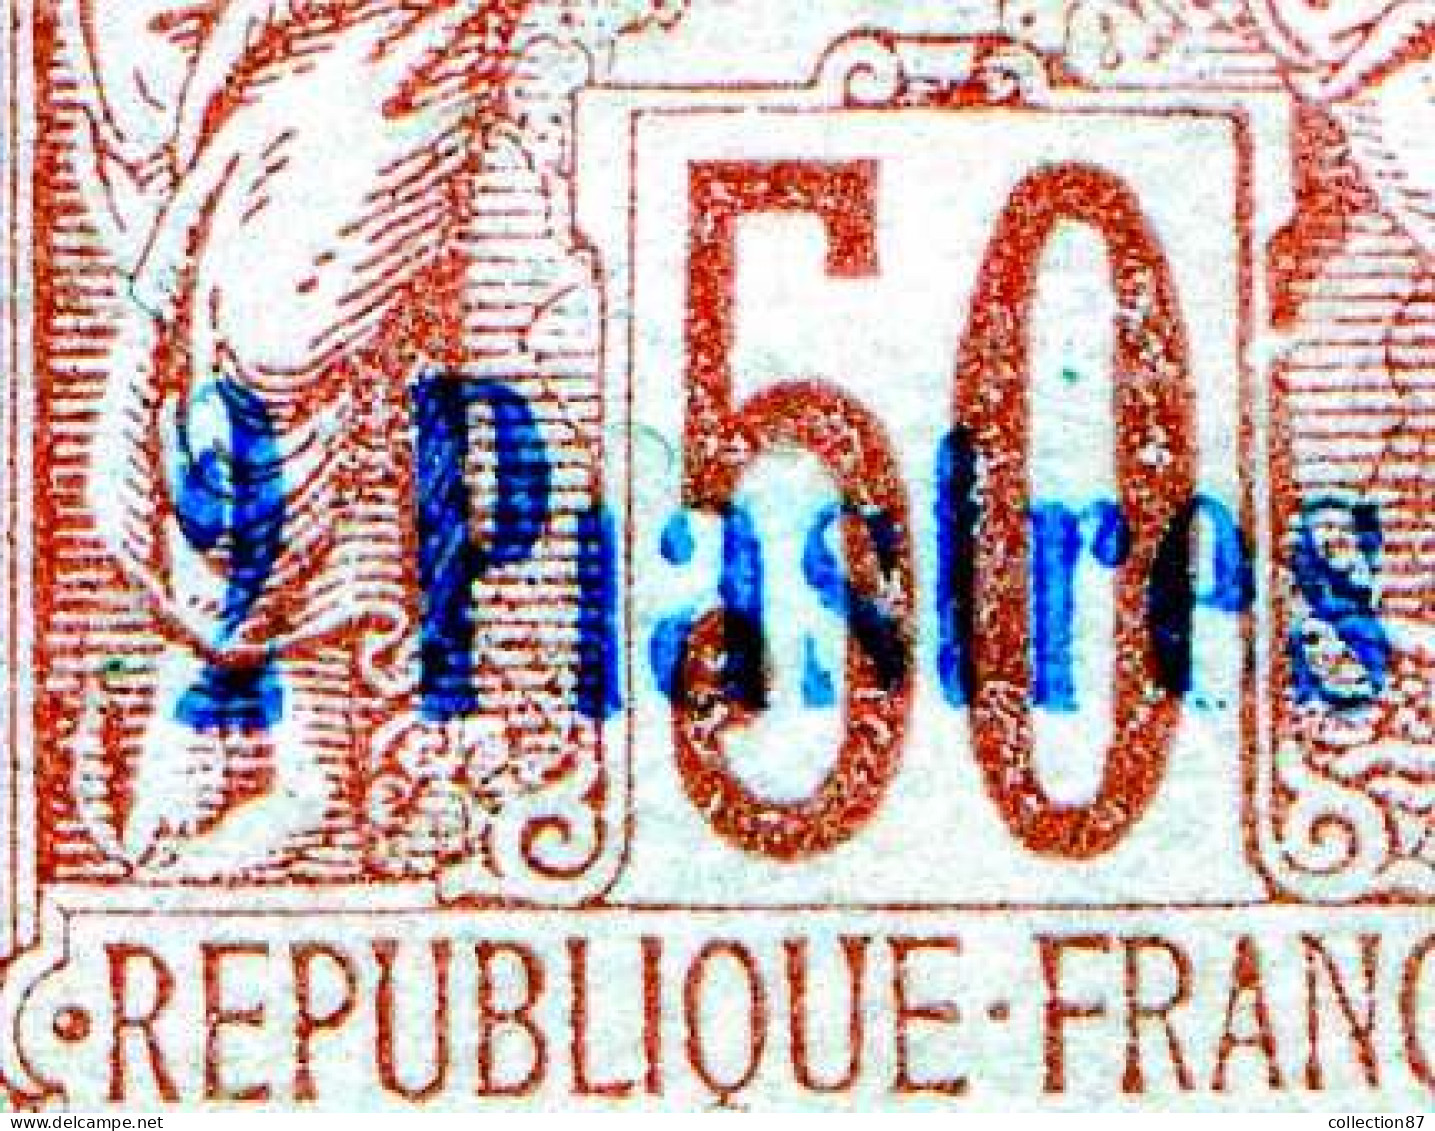 Réf 83 > VATHY < N° 8a * Sans Point Sur I De Piastres < Neuf Ch -- MH * -----> Cote 125 € - Unused Stamps